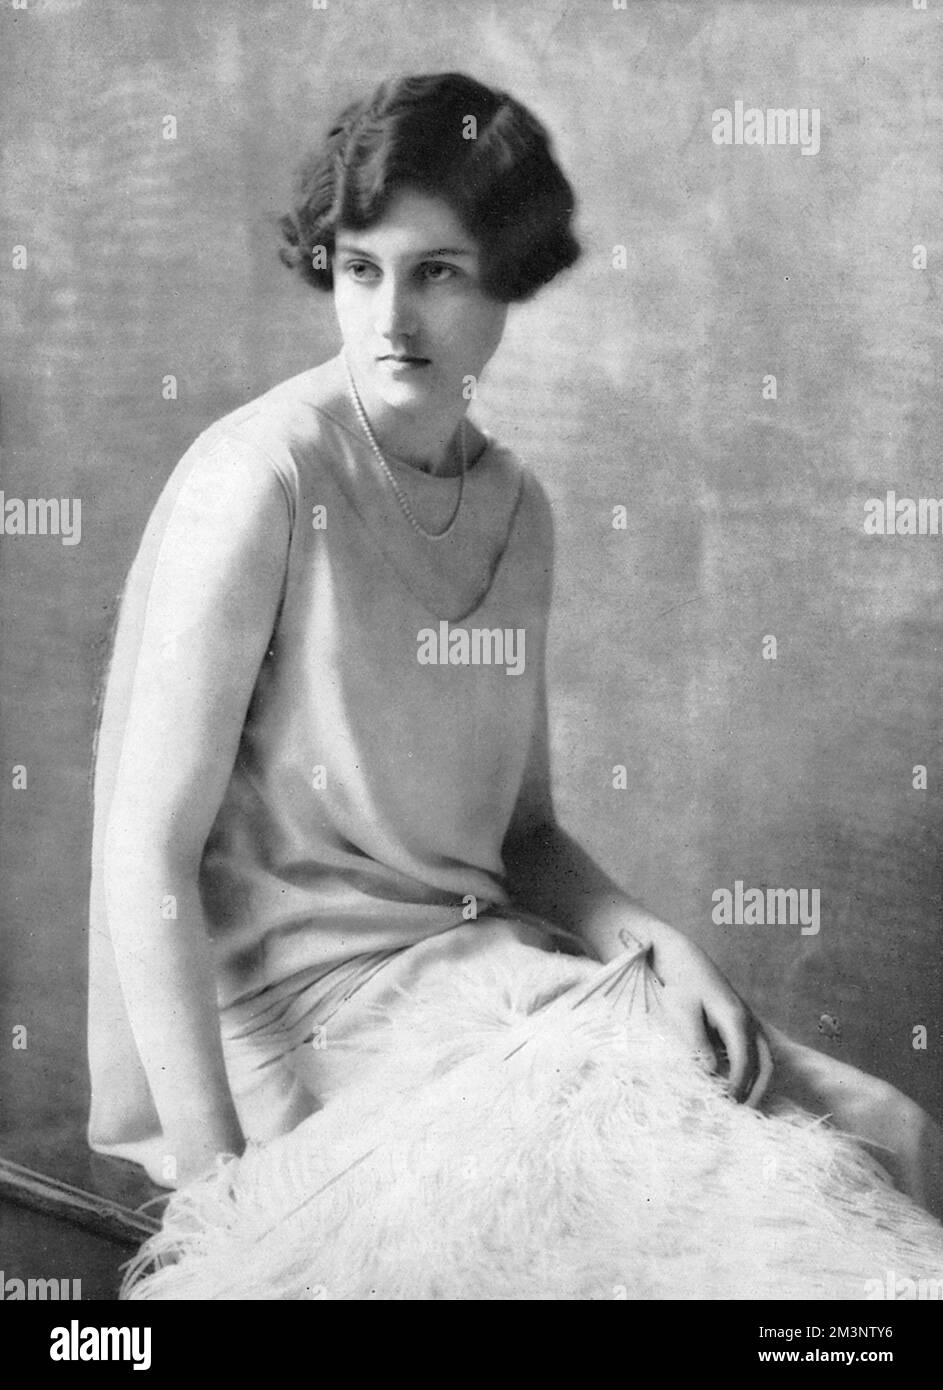 Marjorie Dora Goschen (geboren 1908), verheiratet, Ling - Tochter des Direktors der Bank of England, Kenneth Goschen. Auf dem Foto, als sie 1927 auf dem zweiten Hof der Saison vorgestellt wurde. Datum: 1927 Stockfoto